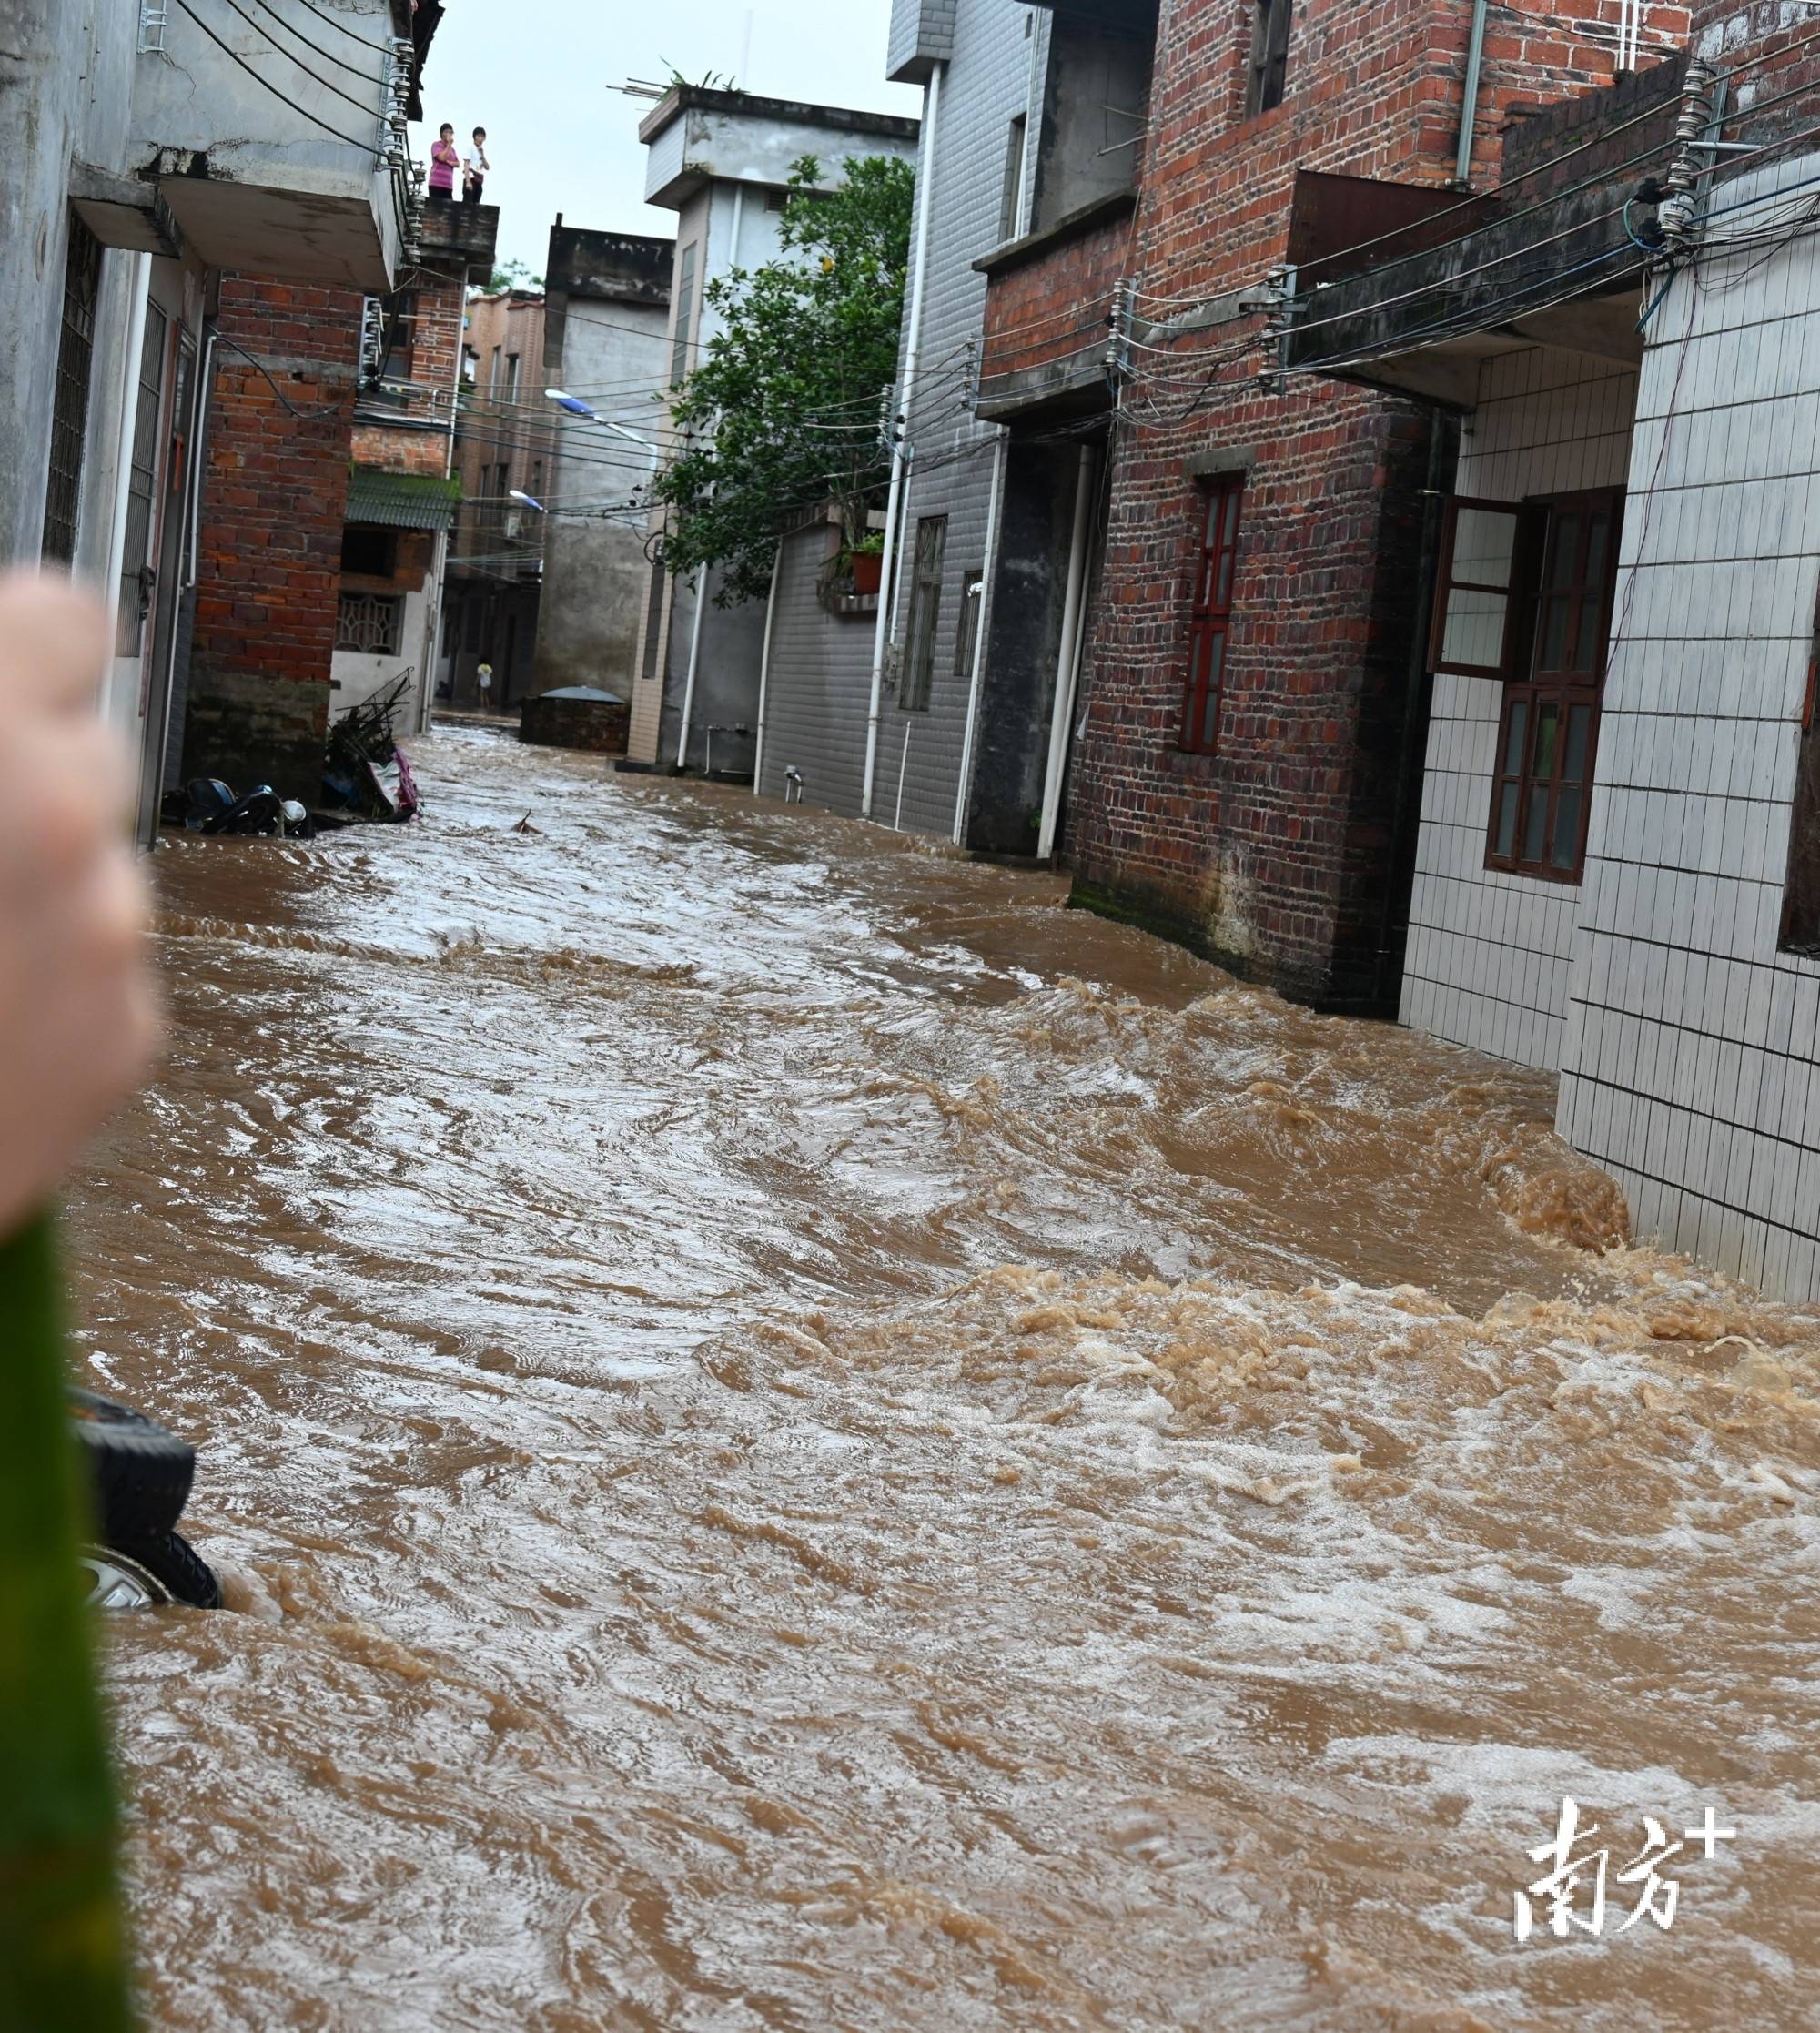 受伤阿婆救出来啦转移4399人记者直击连州洪流中的暖流